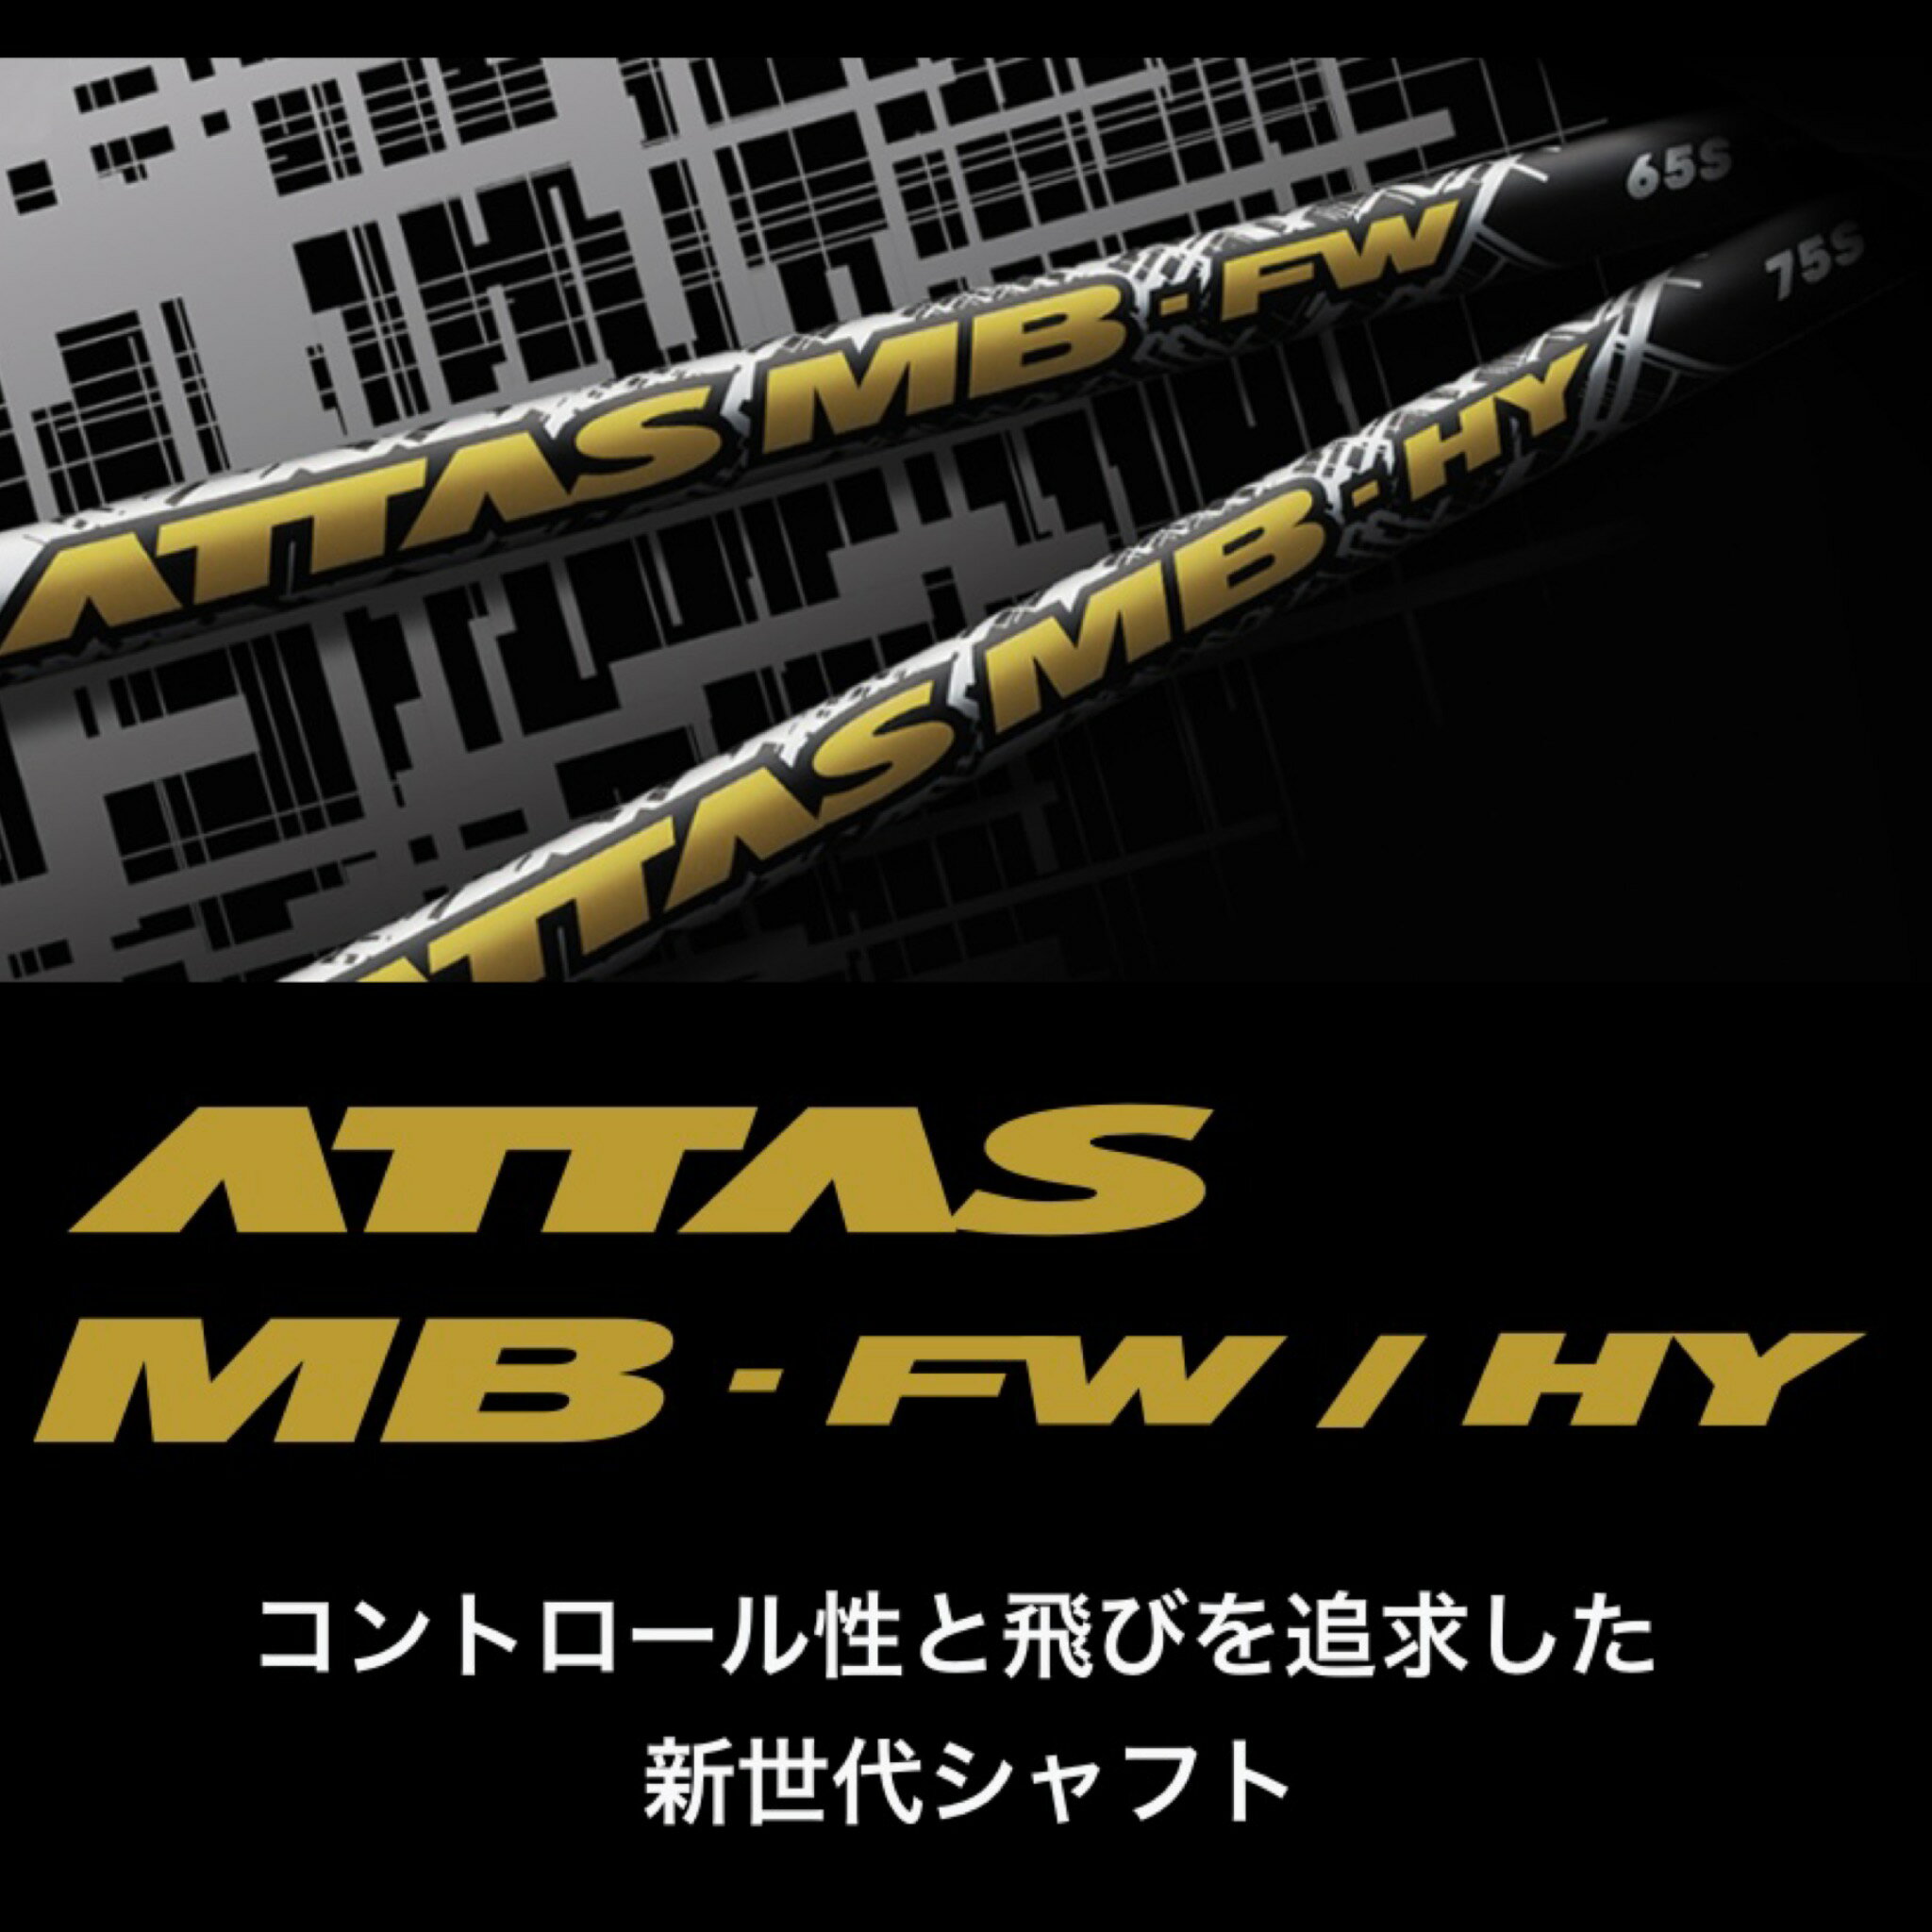 TM 【スパイン調整無料】 ATTAS MB FW テーラーメイド Qi10ツアー ステルス2 ステルス SIM/SIM2/M FWシリーズ対応 スリーブ付 フェアウェイウッド ゴルフ シャフト USTマミヤ アッタス 2